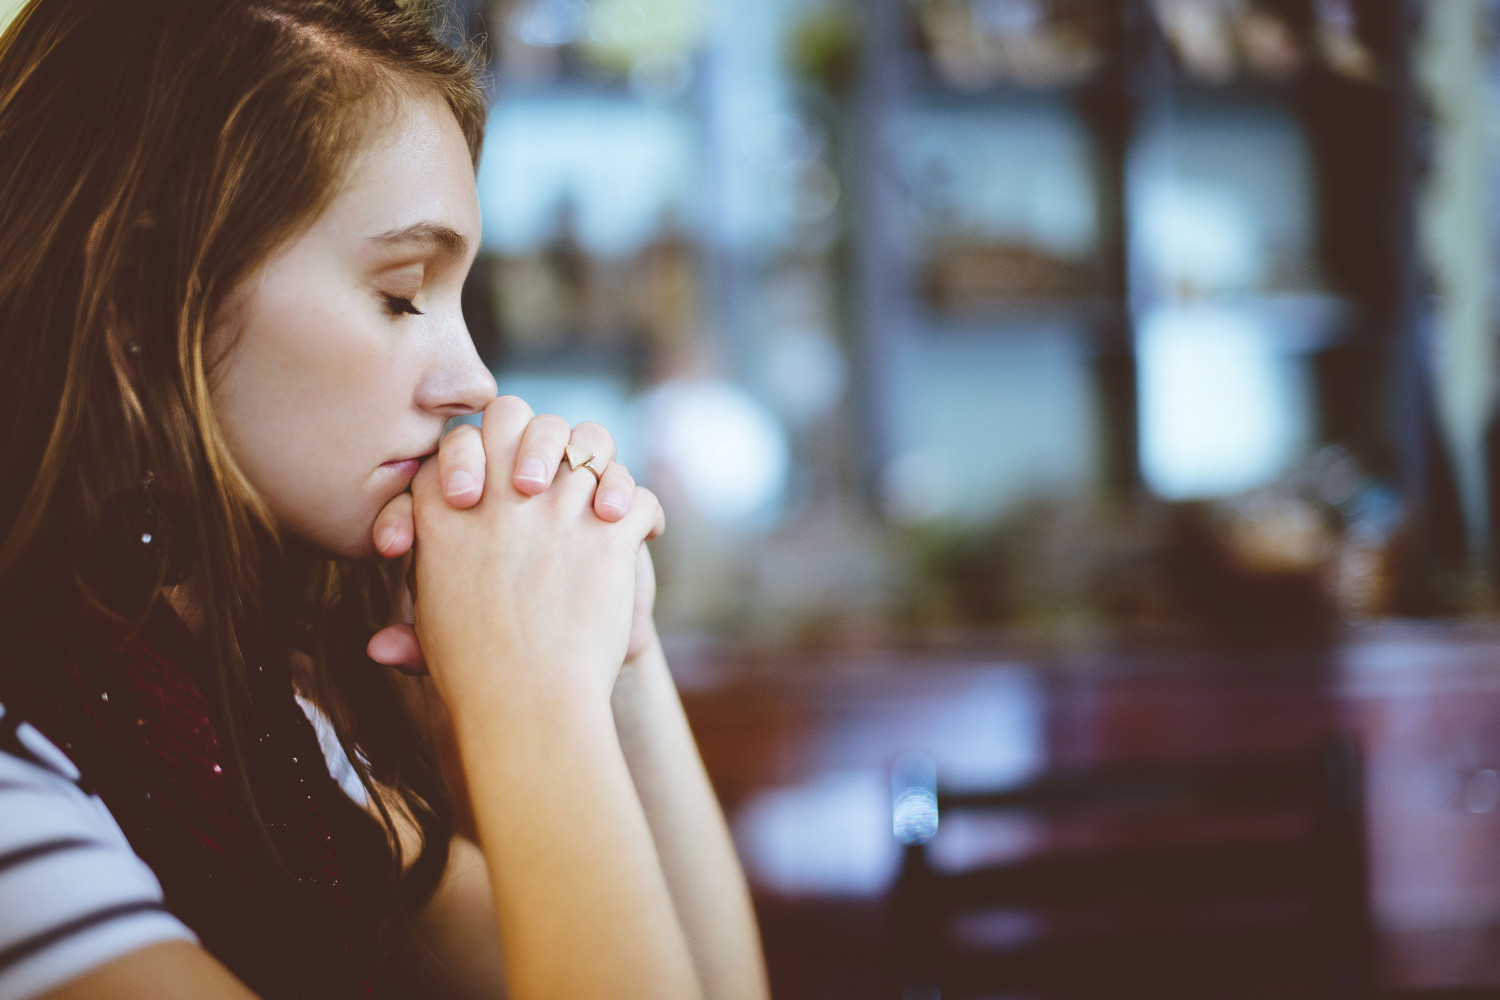 Image of woman praying